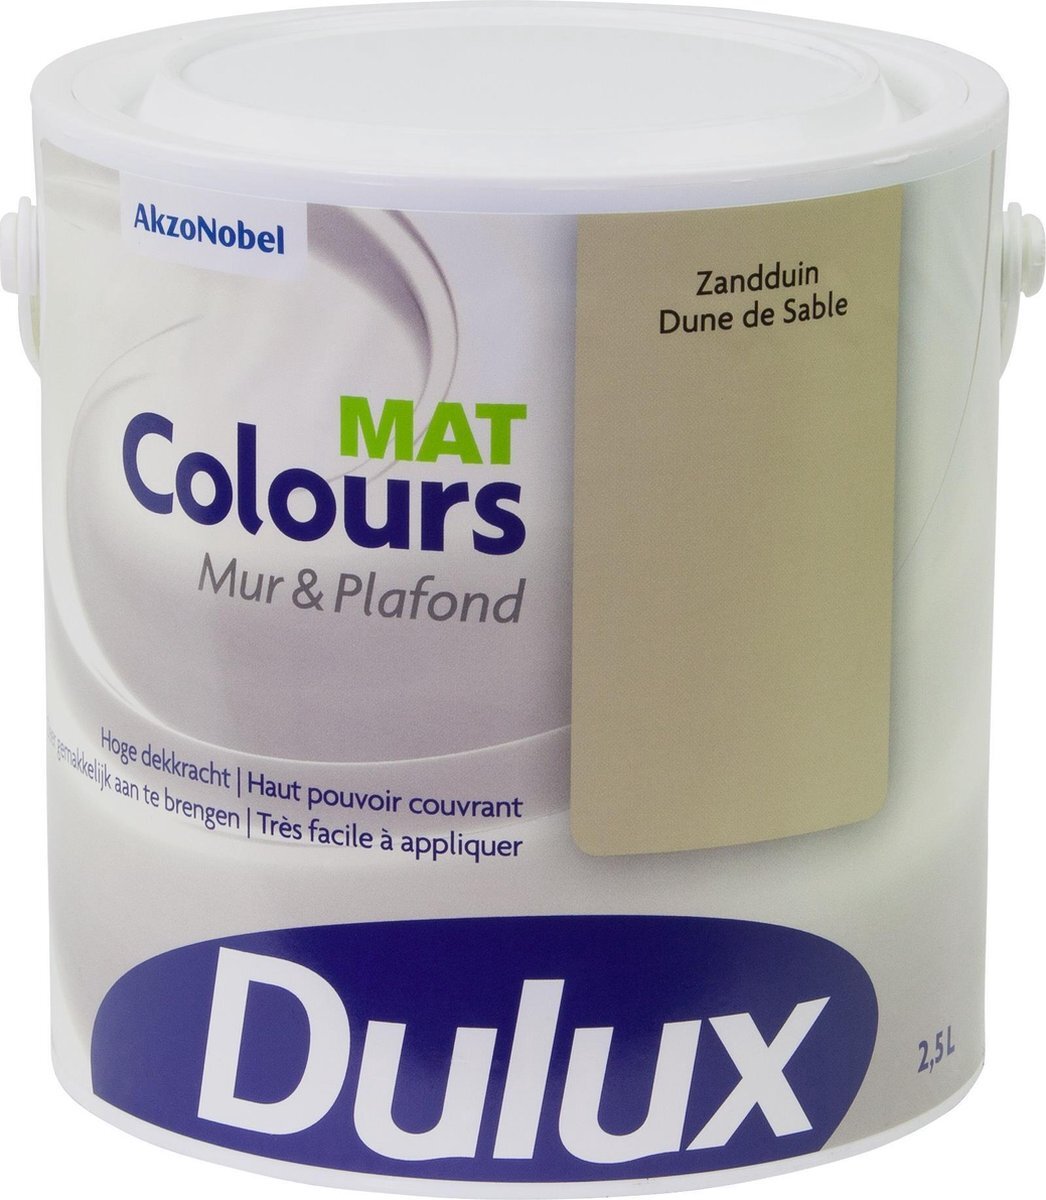 DULUX Colours Mur & Plafond - Mat - Zandtuin - 2,5 Liter